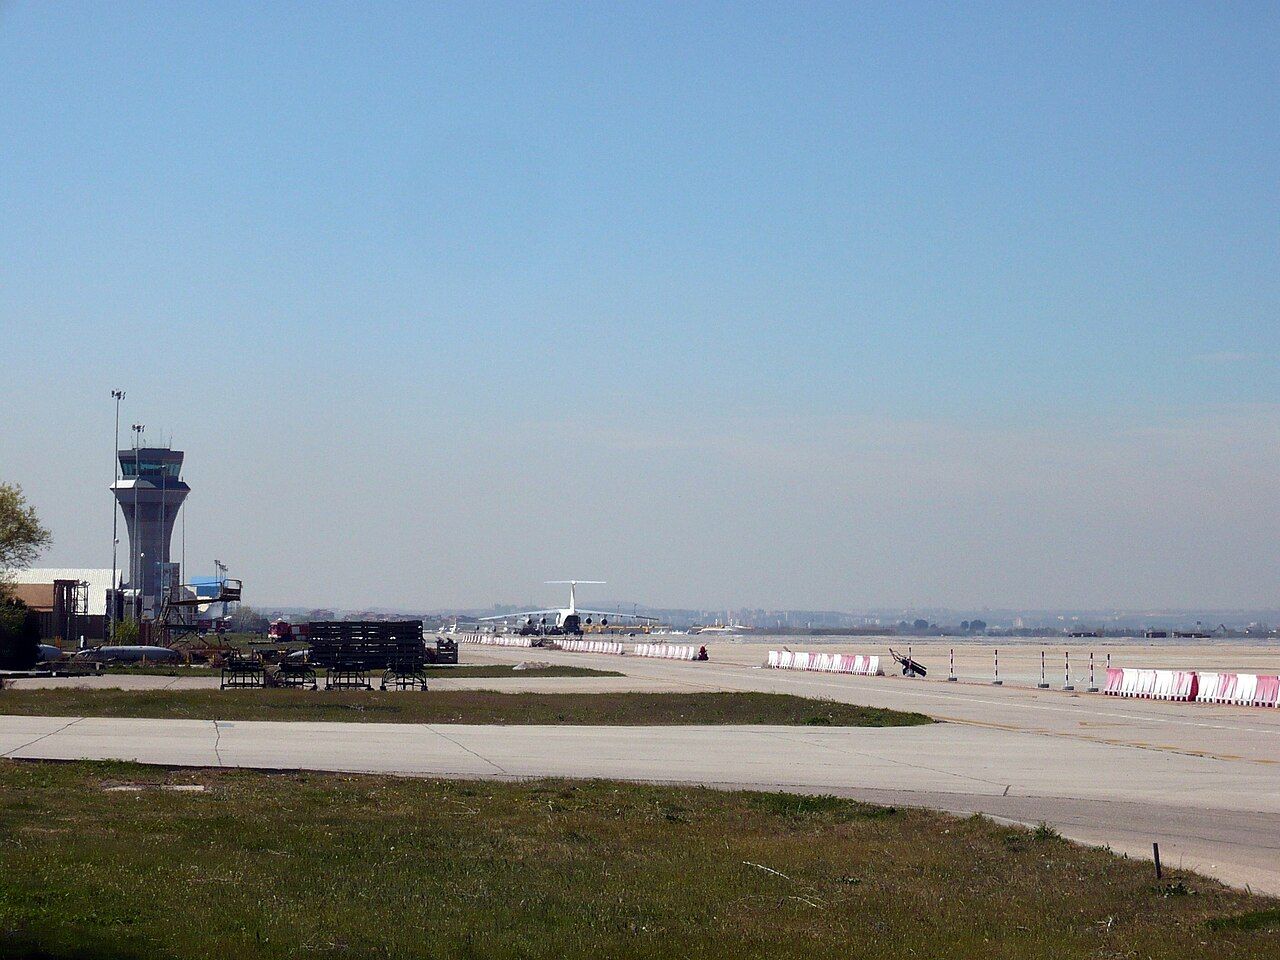 La Base Aérea de Torrejón es uno de los principales aeropuertos militares españoles.